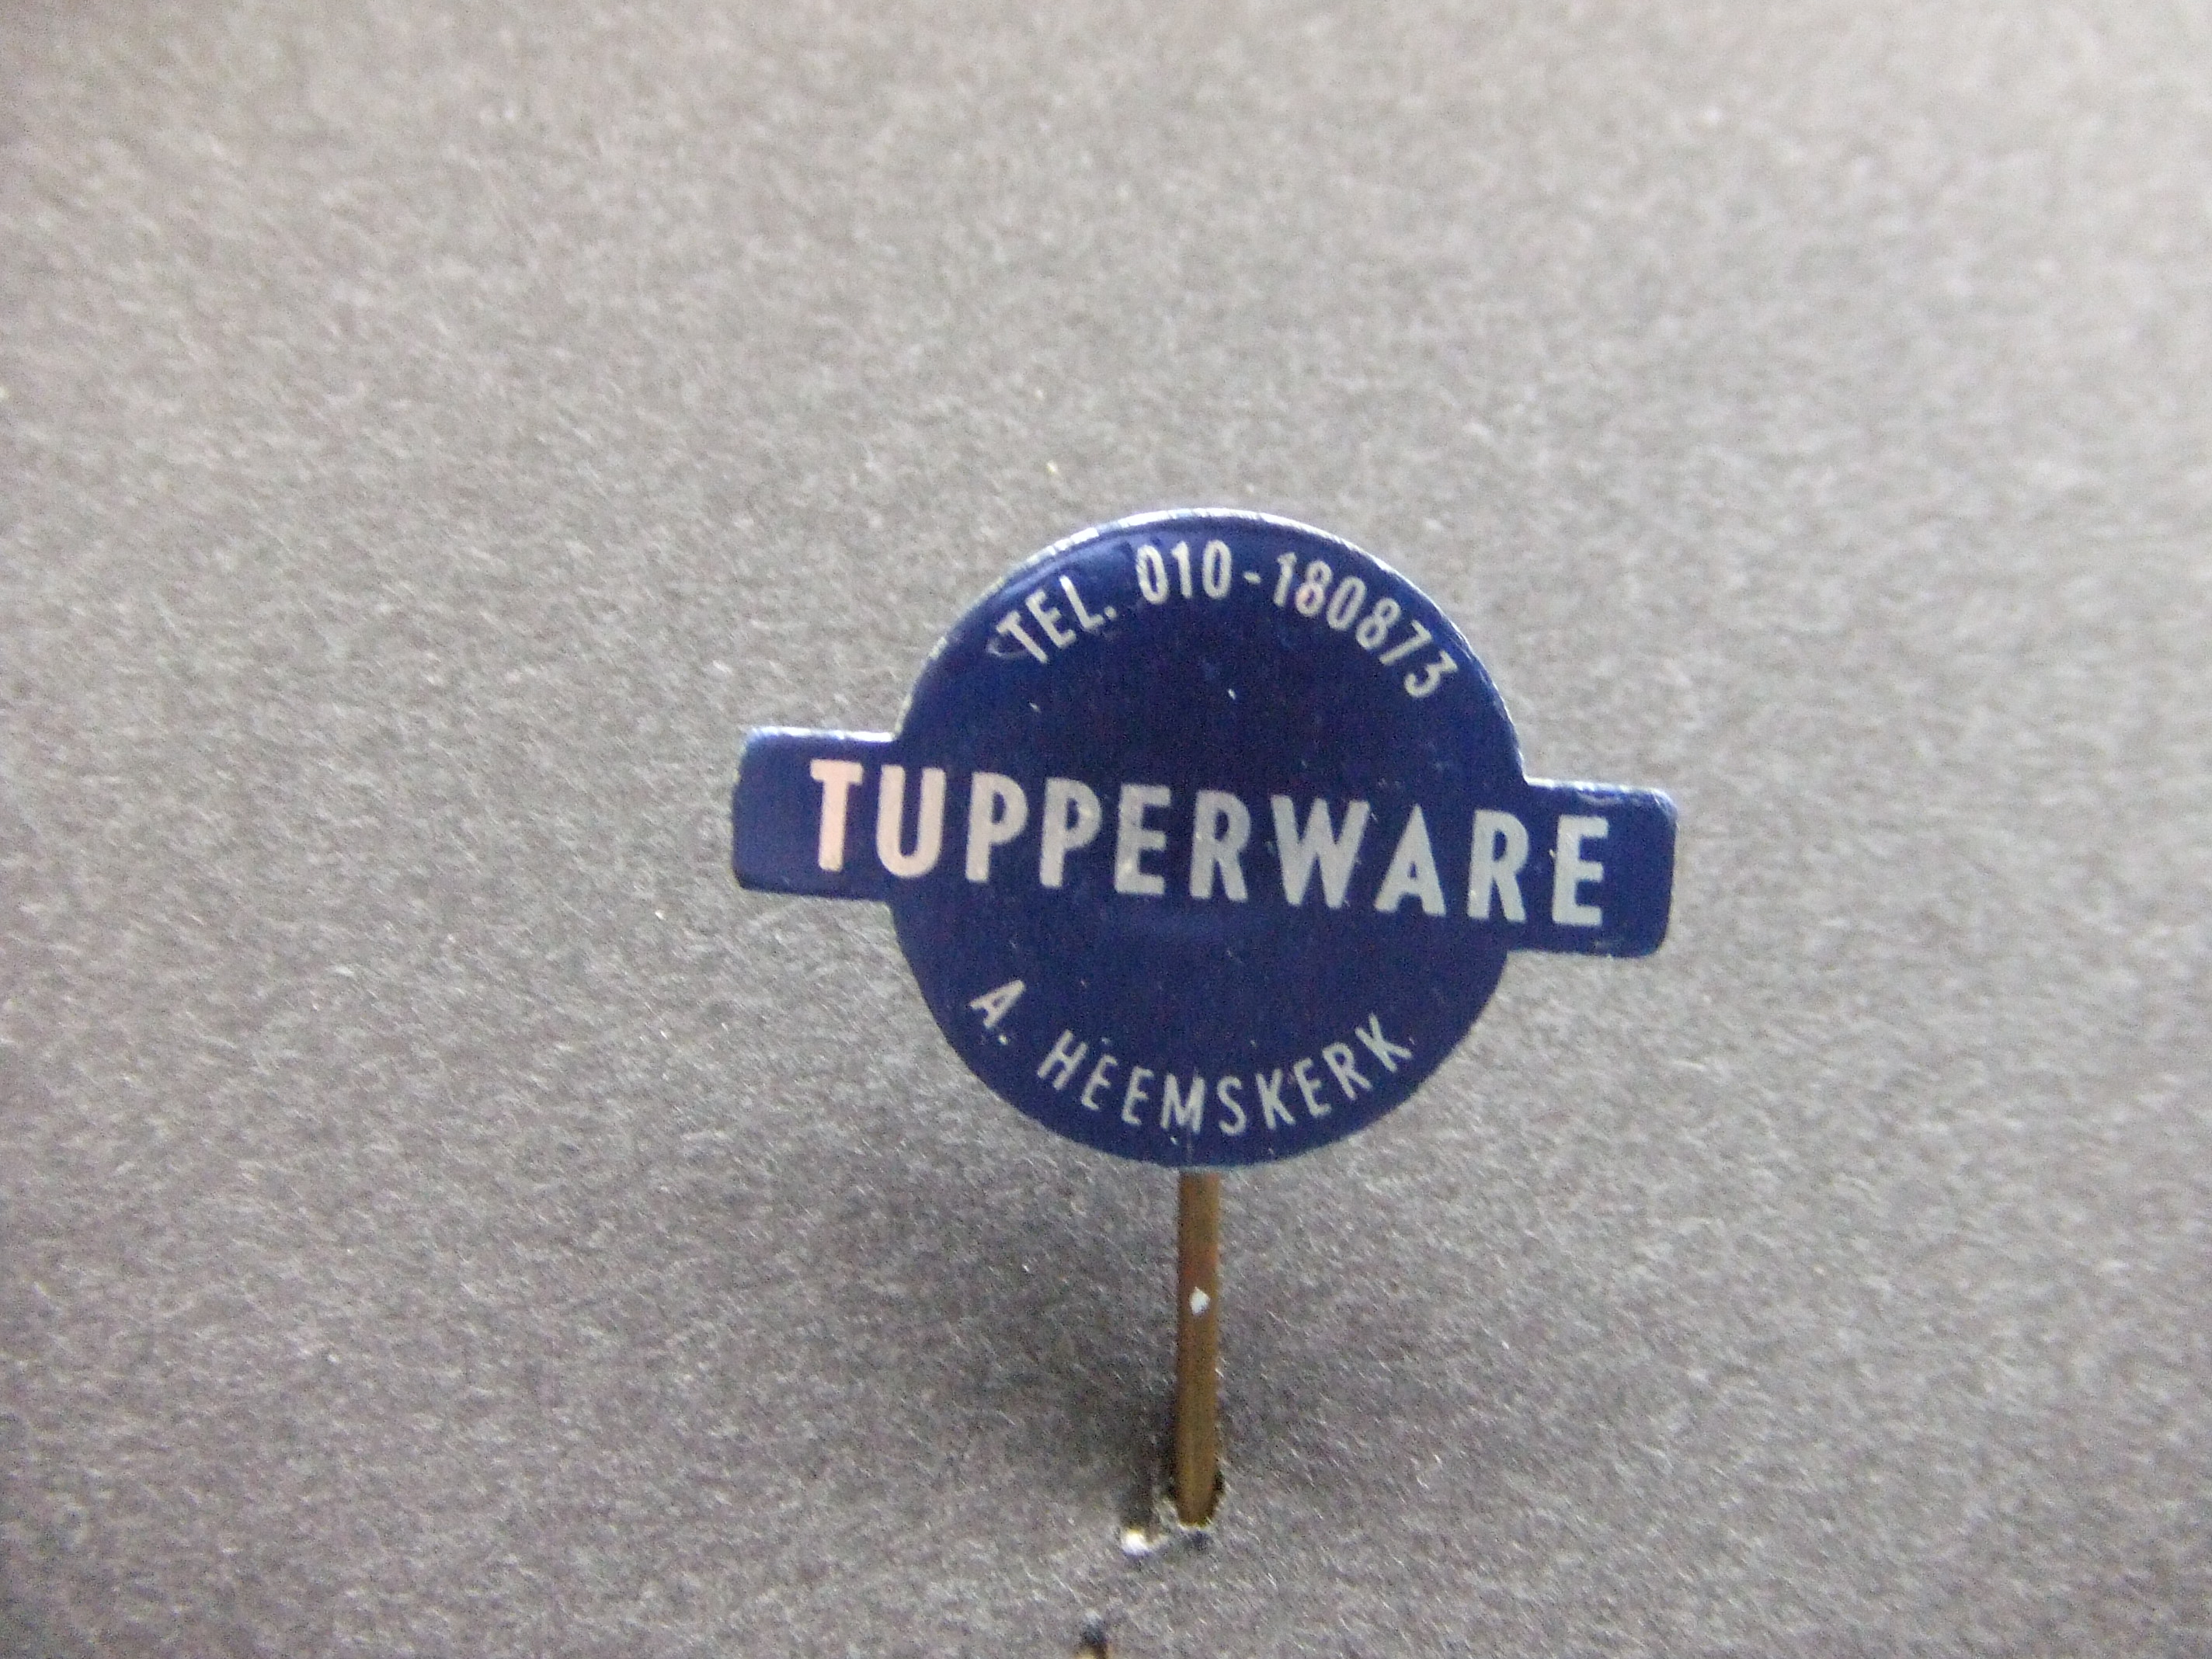 Tupperware consulent A Heemskerk Rotterdam